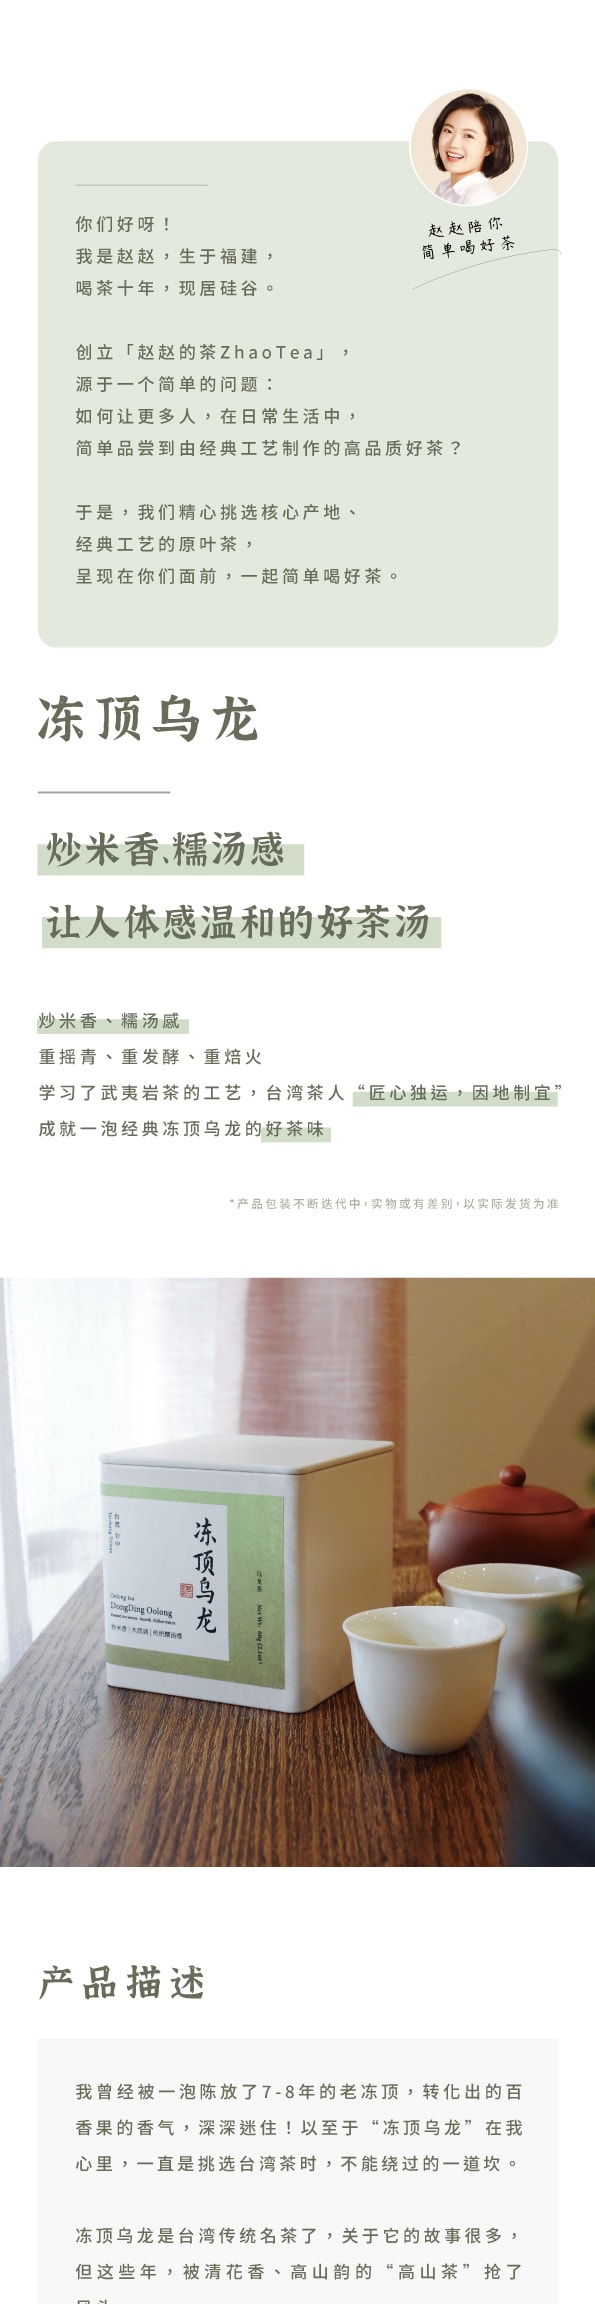 美國 趙趙的茶 ZhaoTea 凍頂烏龍 台灣台中 經典烏龍茶 炒米香 湯感溫和 60g